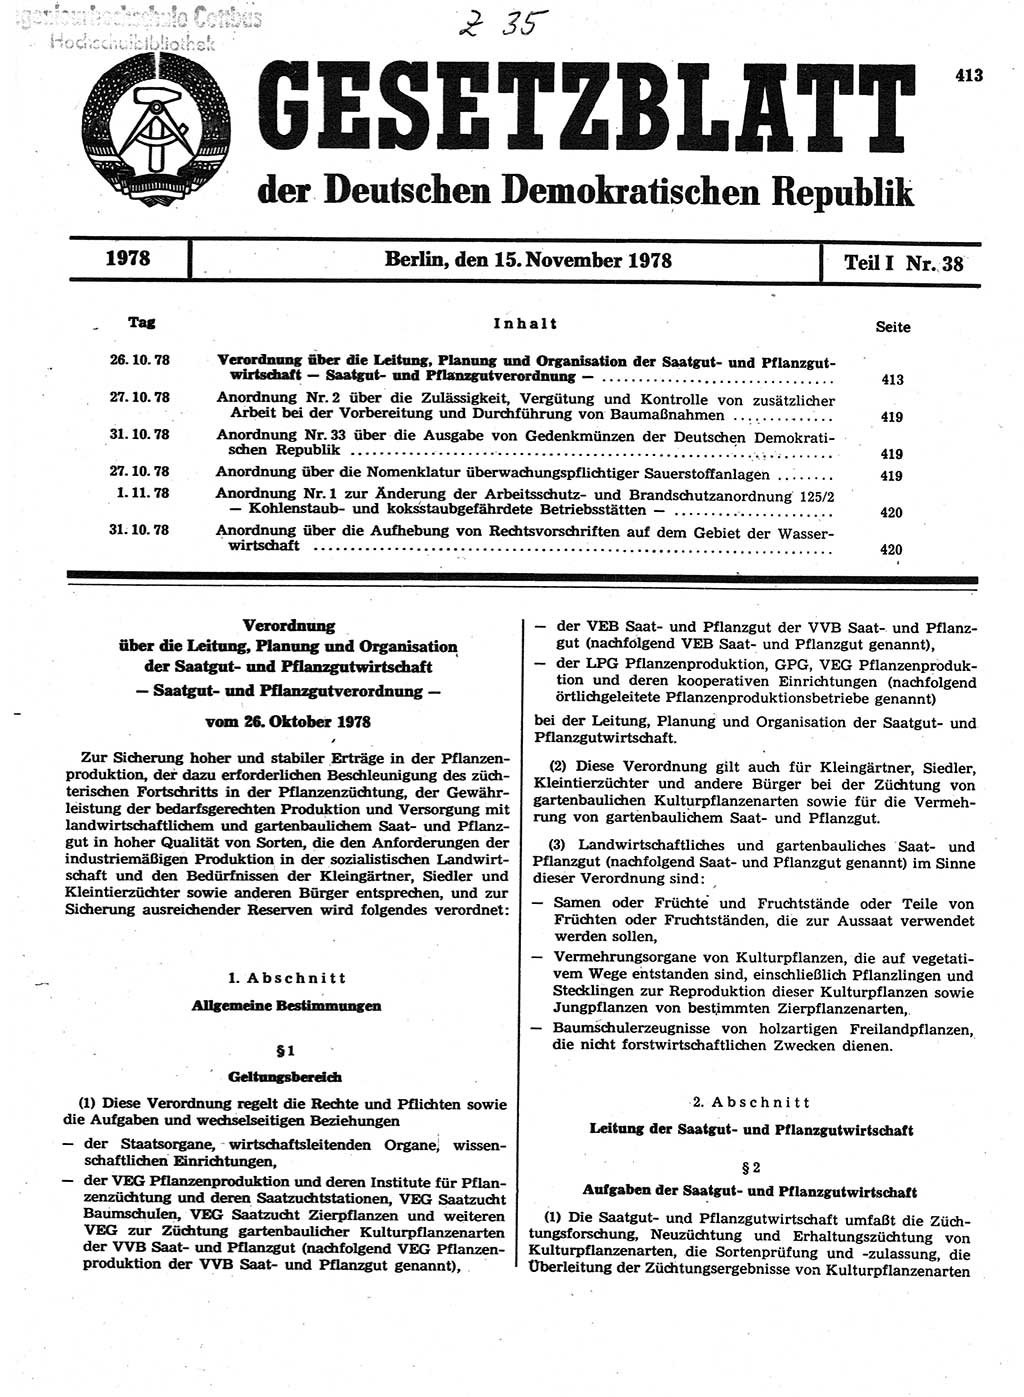 Gesetzblatt (GBl.) der Deutschen Demokratischen Republik (DDR) Teil Ⅰ 1978, Seite 413 (GBl. DDR Ⅰ 1978, S. 413)